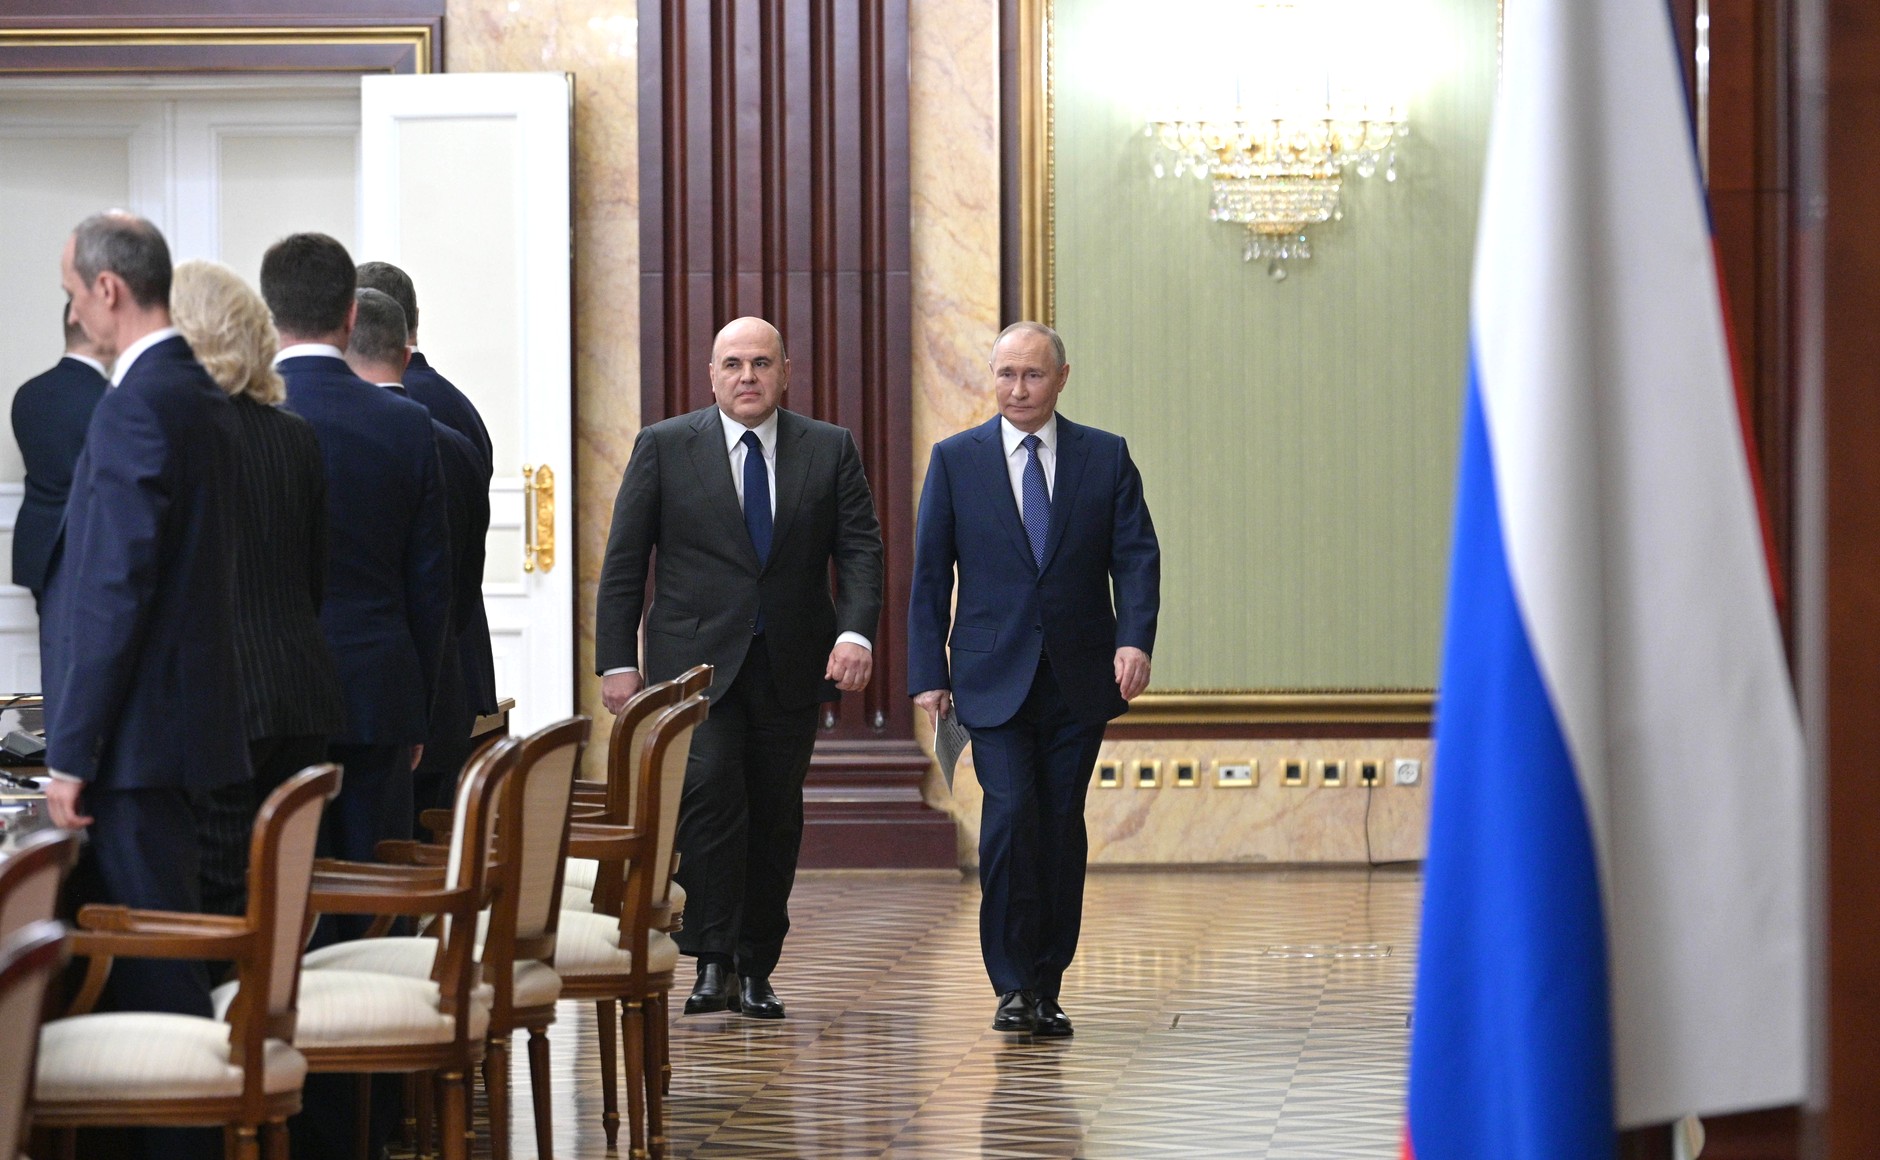 Duma Putin'in tavsiyesine uydu: Mişustin yine başbakan